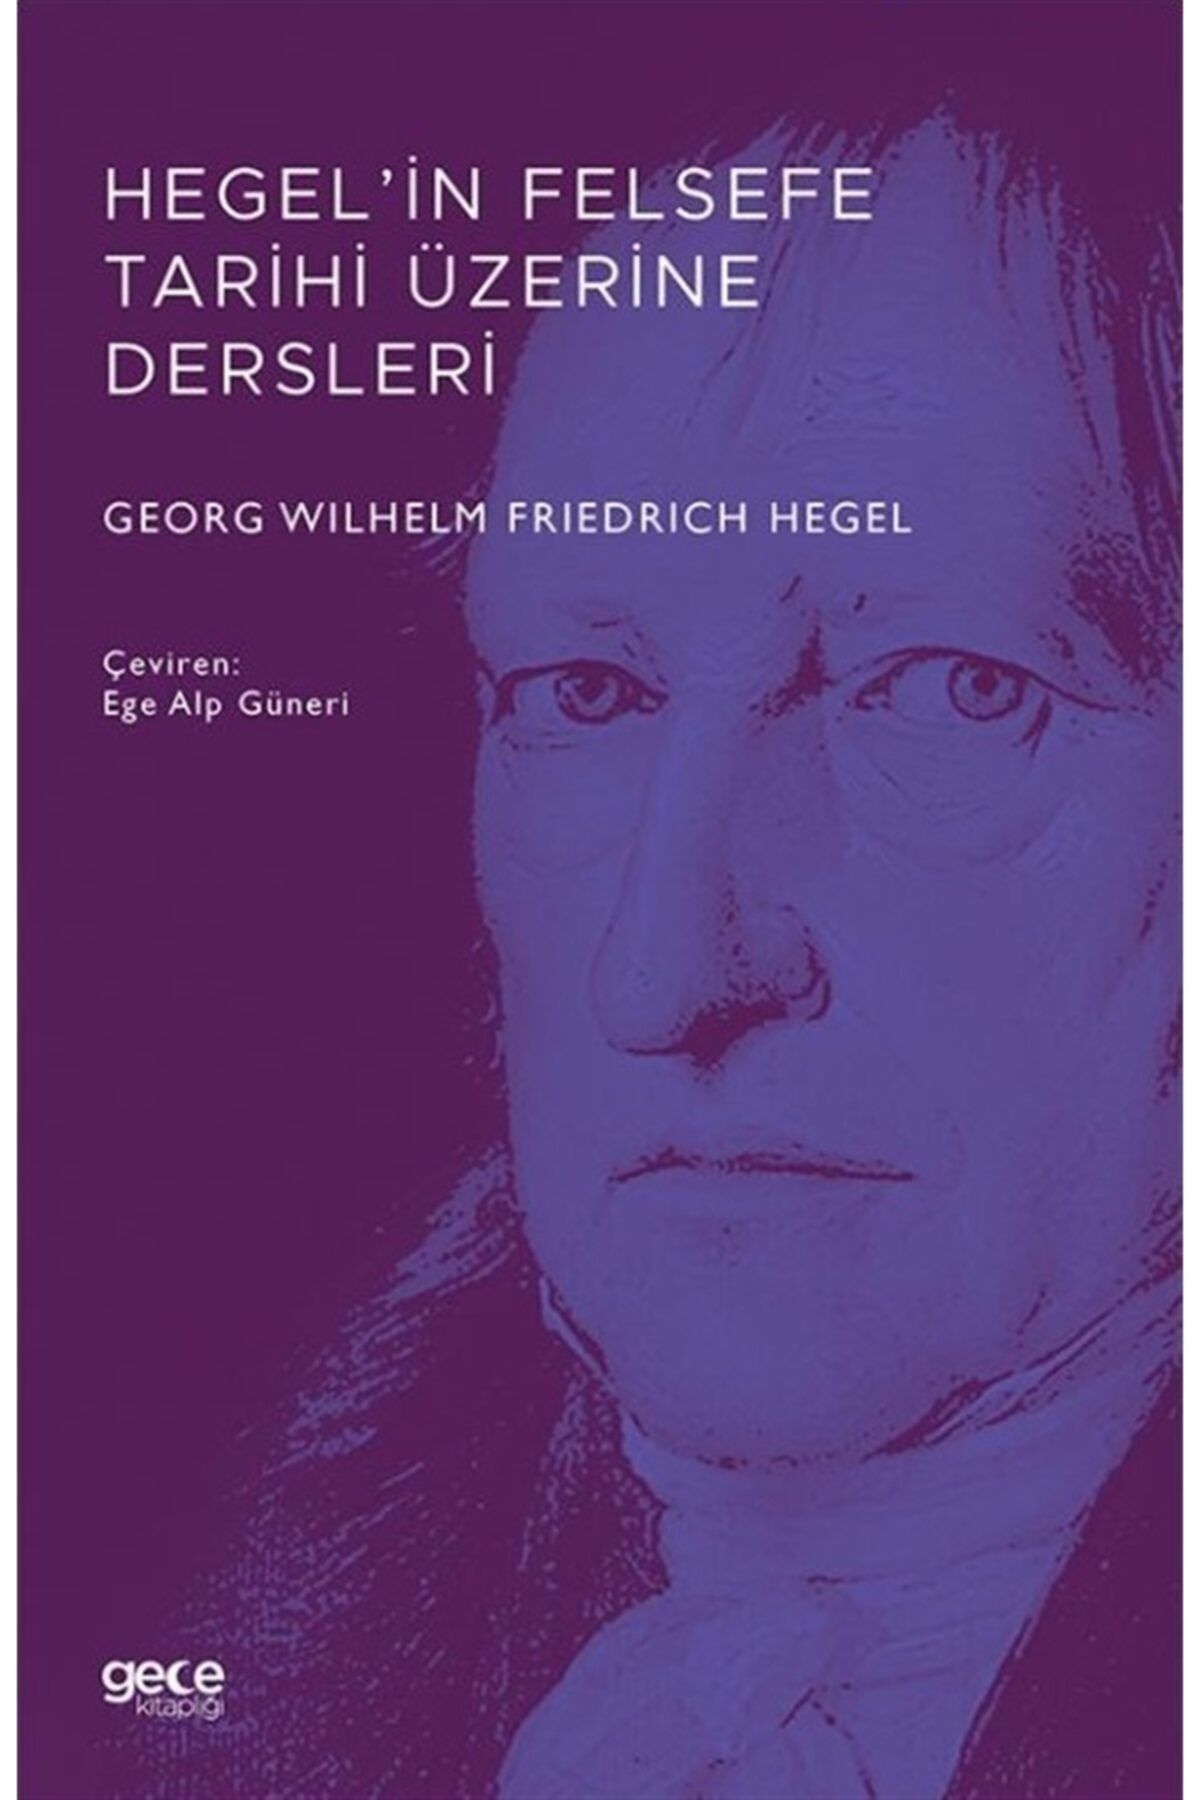 Gece Kitaplığı Hegel’in Felsefe Tarihi Üzerine Dersleri - Georg Wilhelm Friedrich Hegel 9786257462211